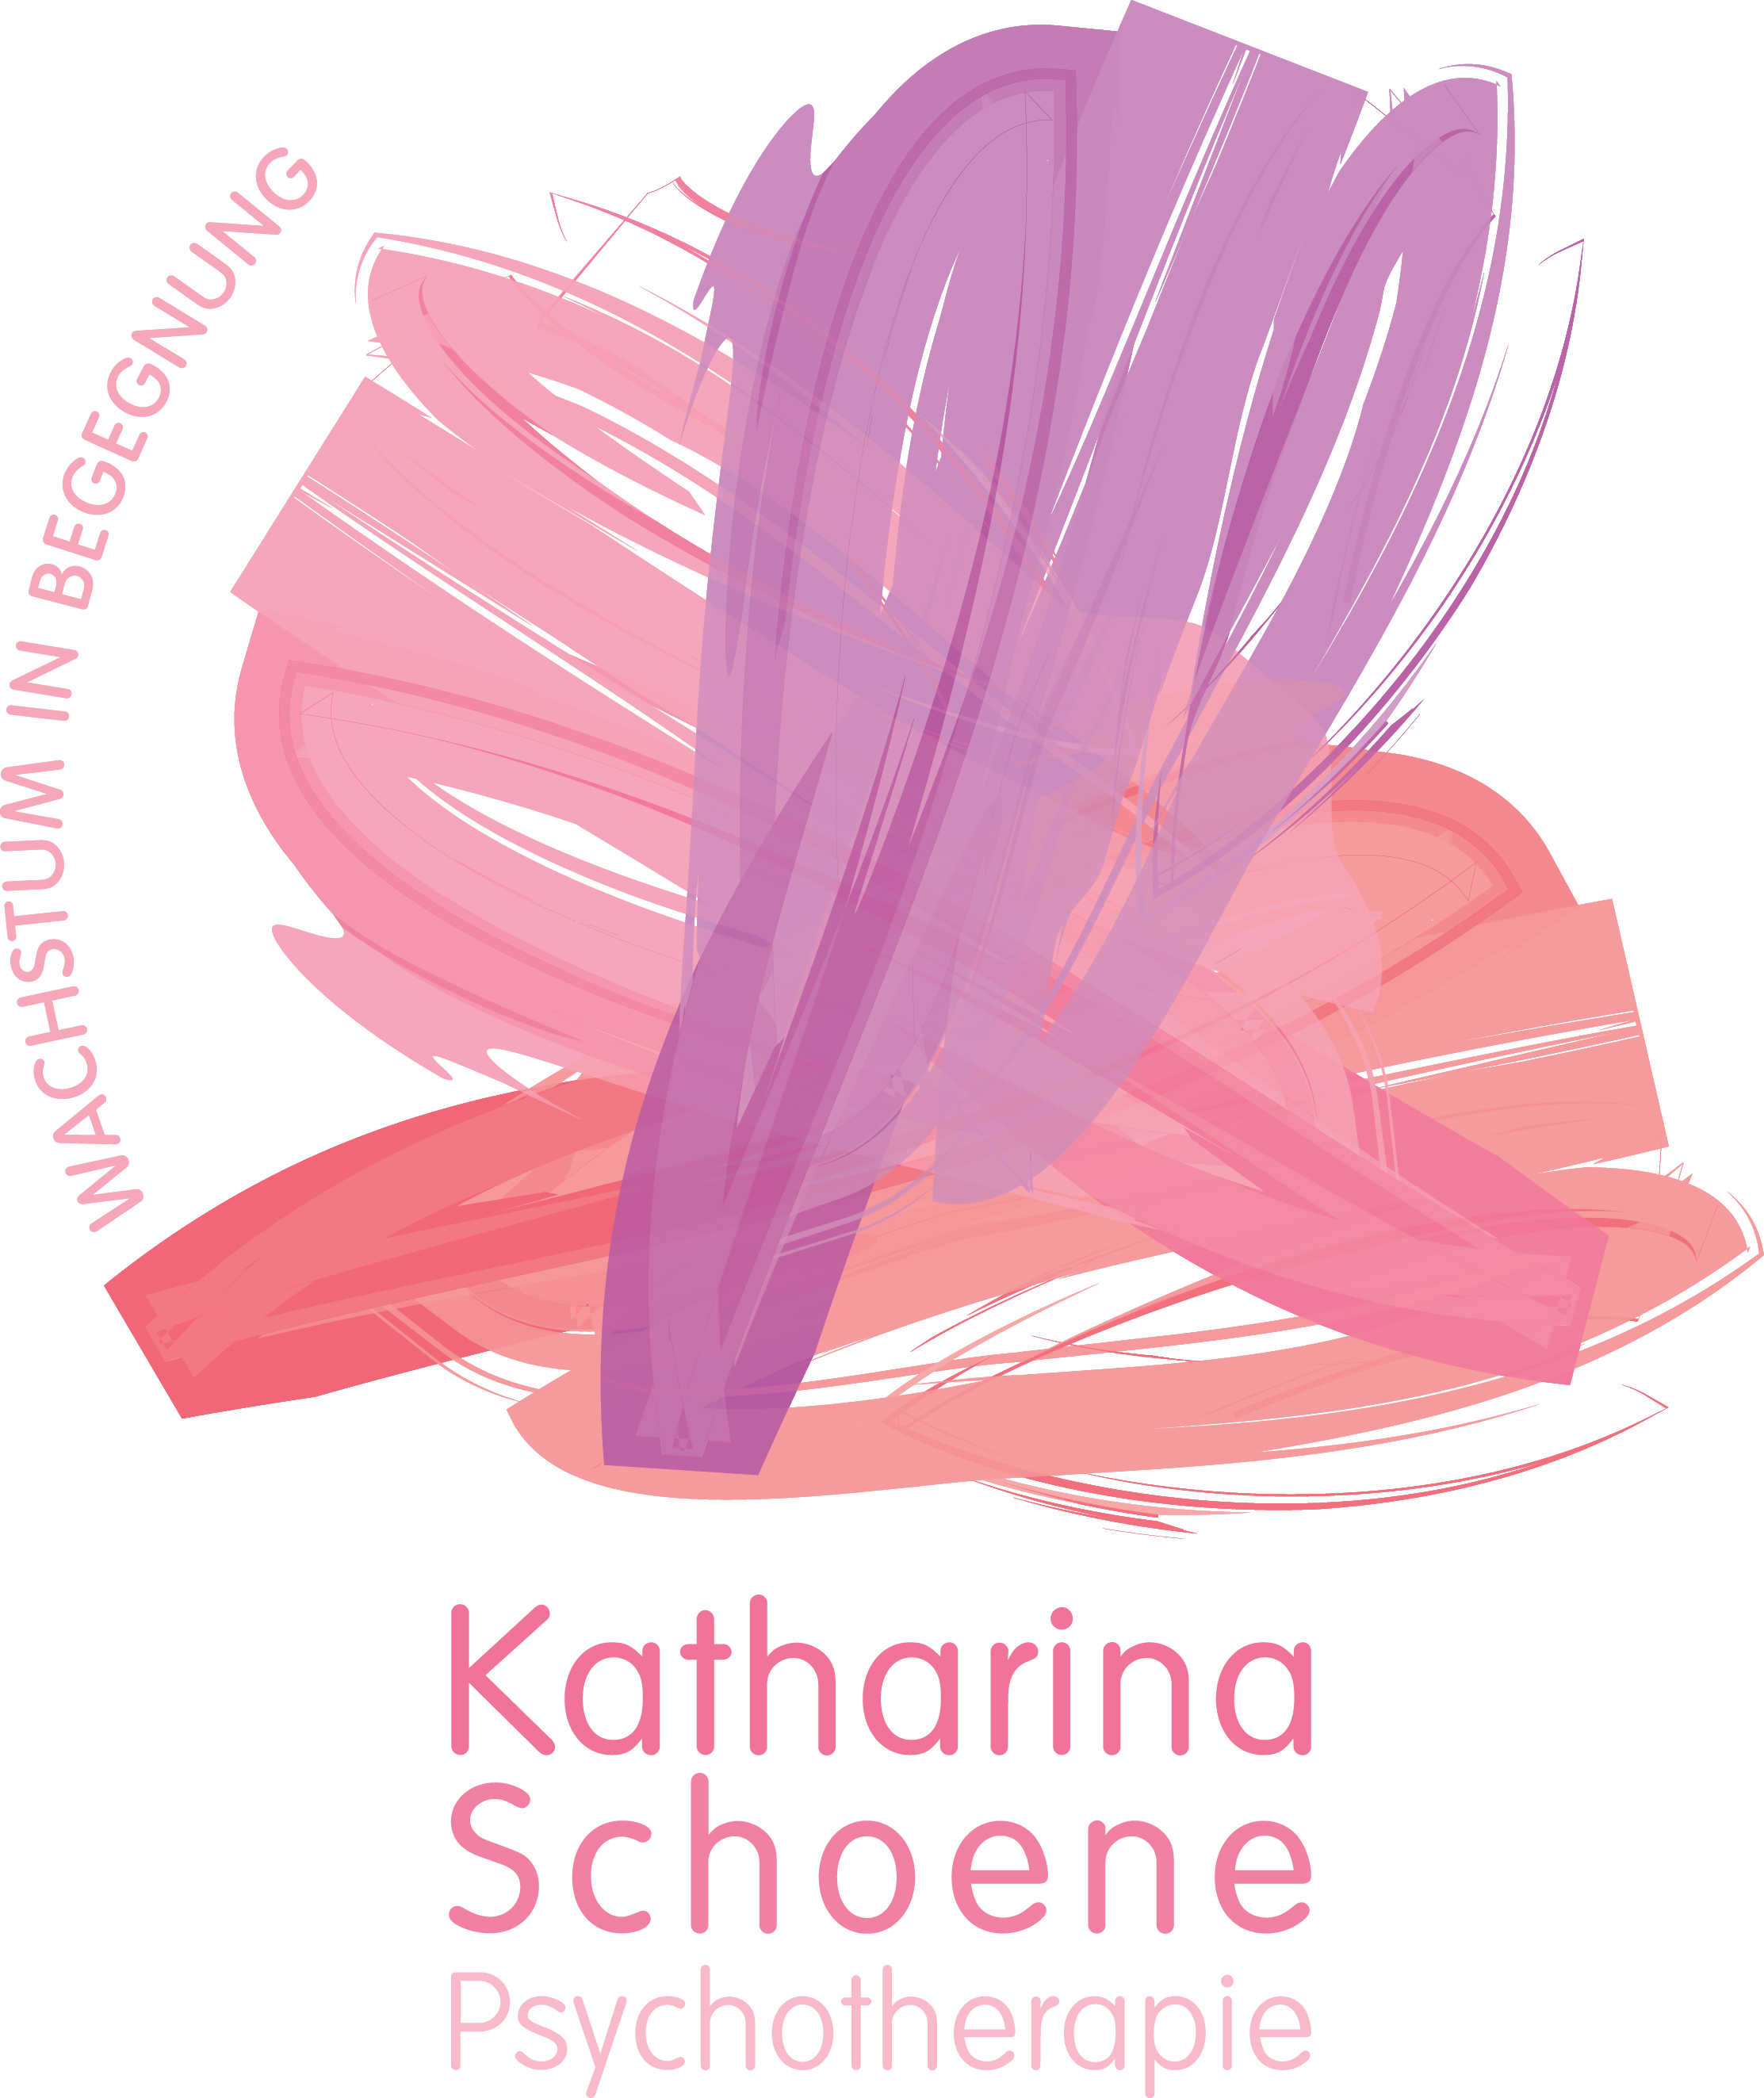 Katharina Schoene